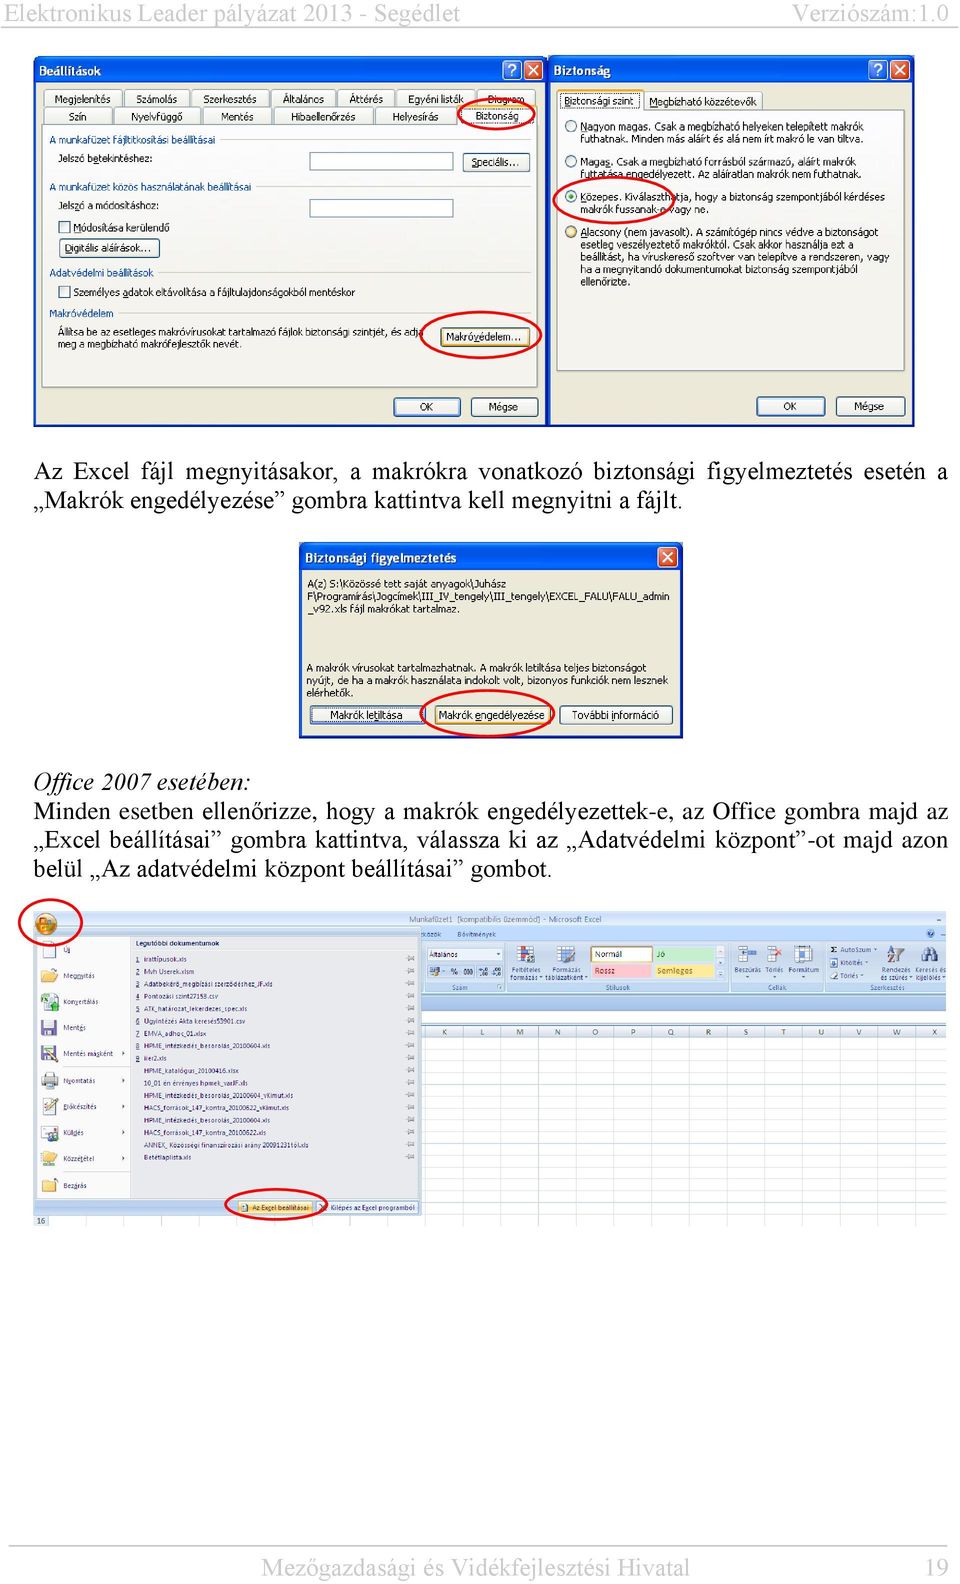 Office 2007 esetében: Minden esetben ellenőrizze, hogy a makrók engedélyezettek-e, az Office gombra majd az